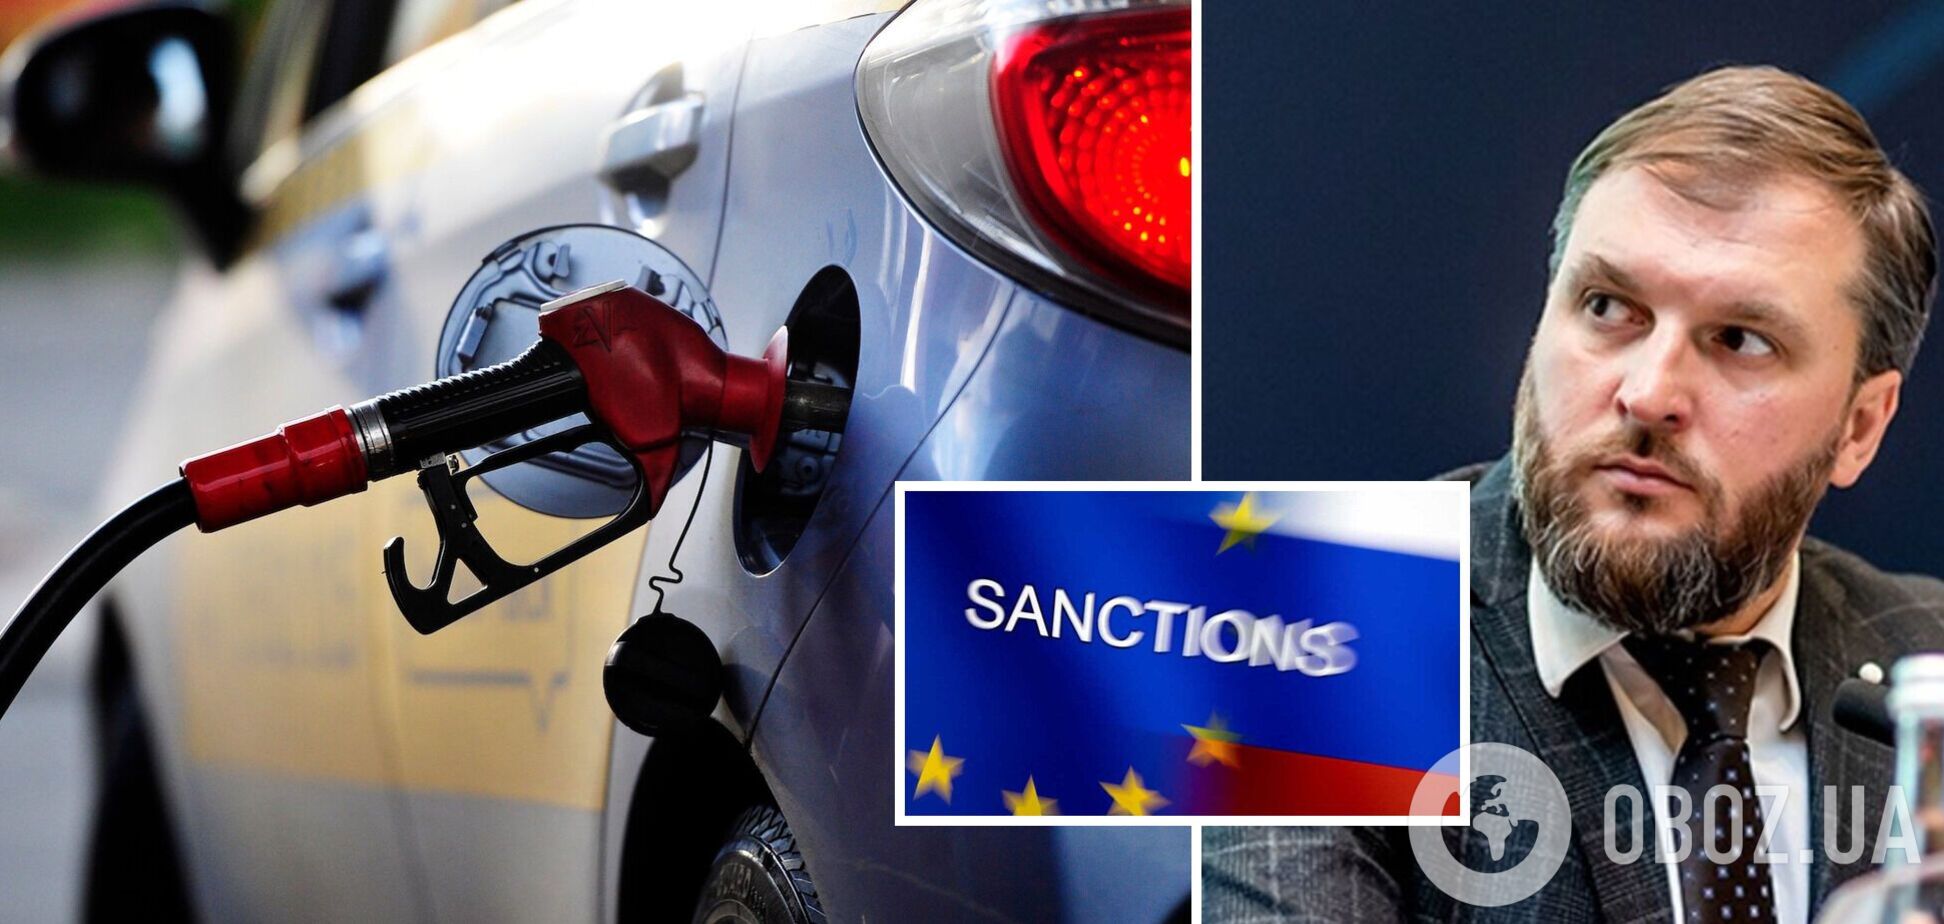 Куюн рассказал о том, изменятся ли цены на бензин и будет ли дефицит топлива в Украине